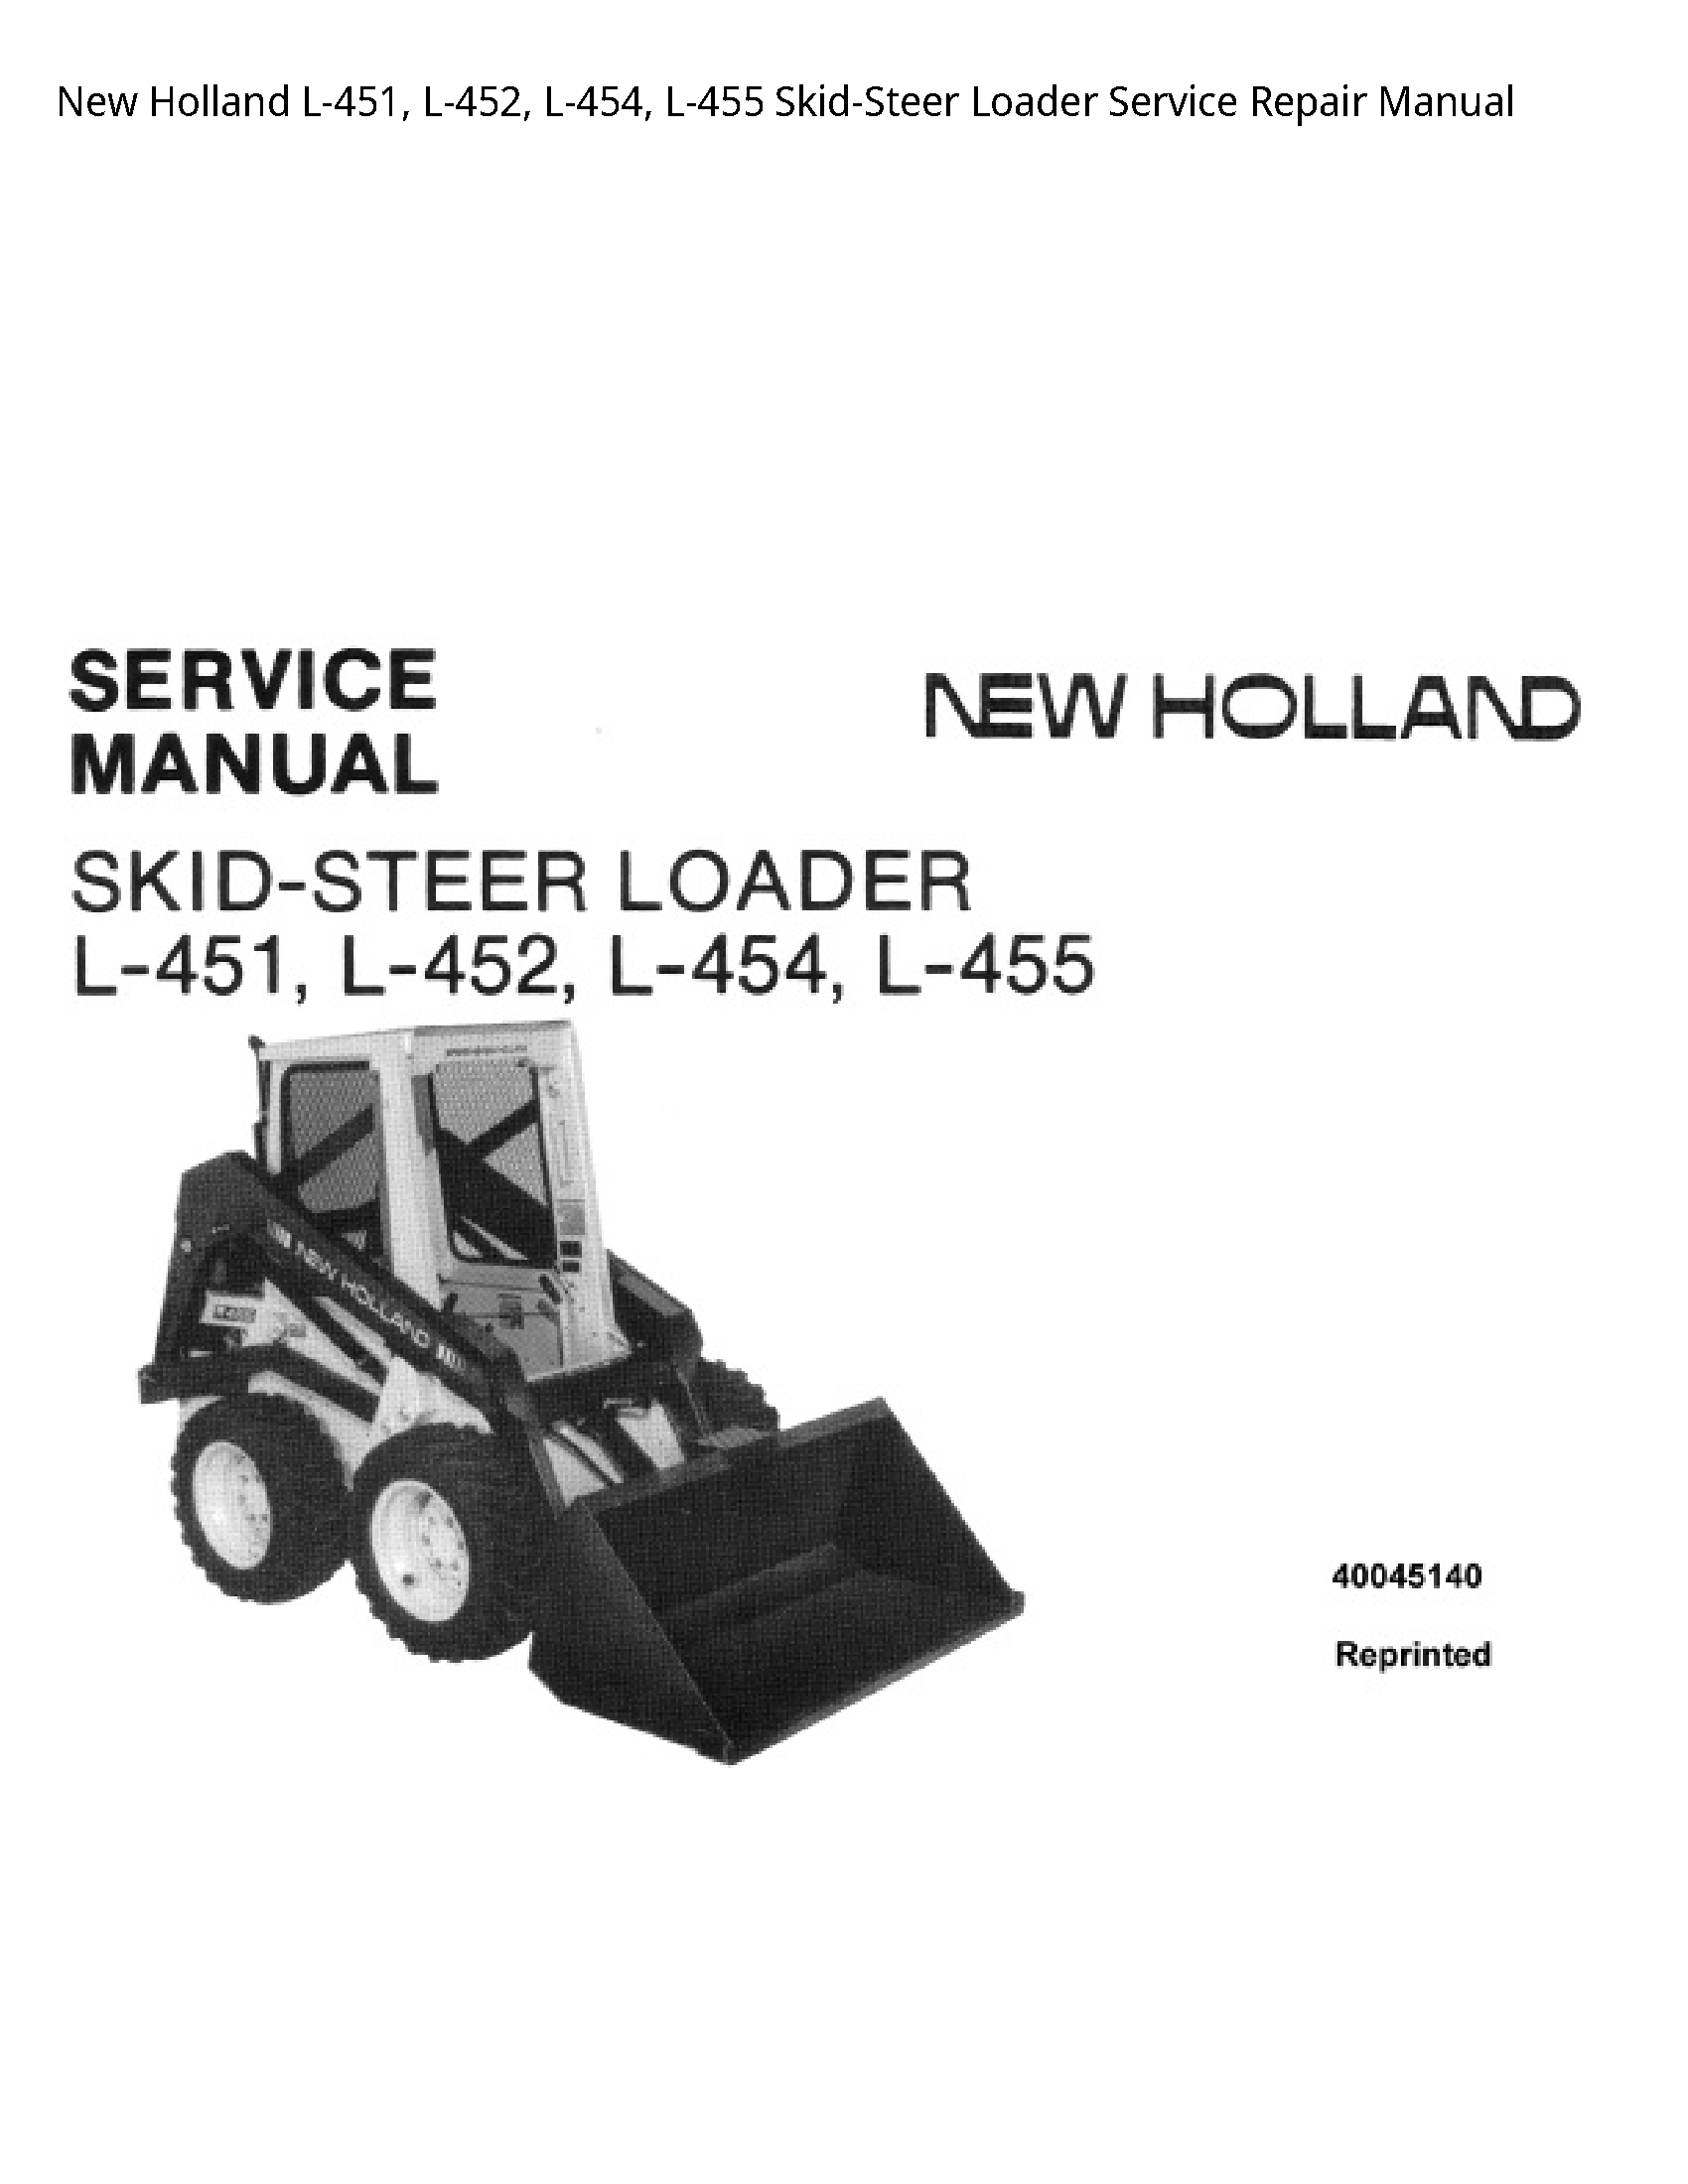 New Holland L-451 Skid-Steer Loader manual